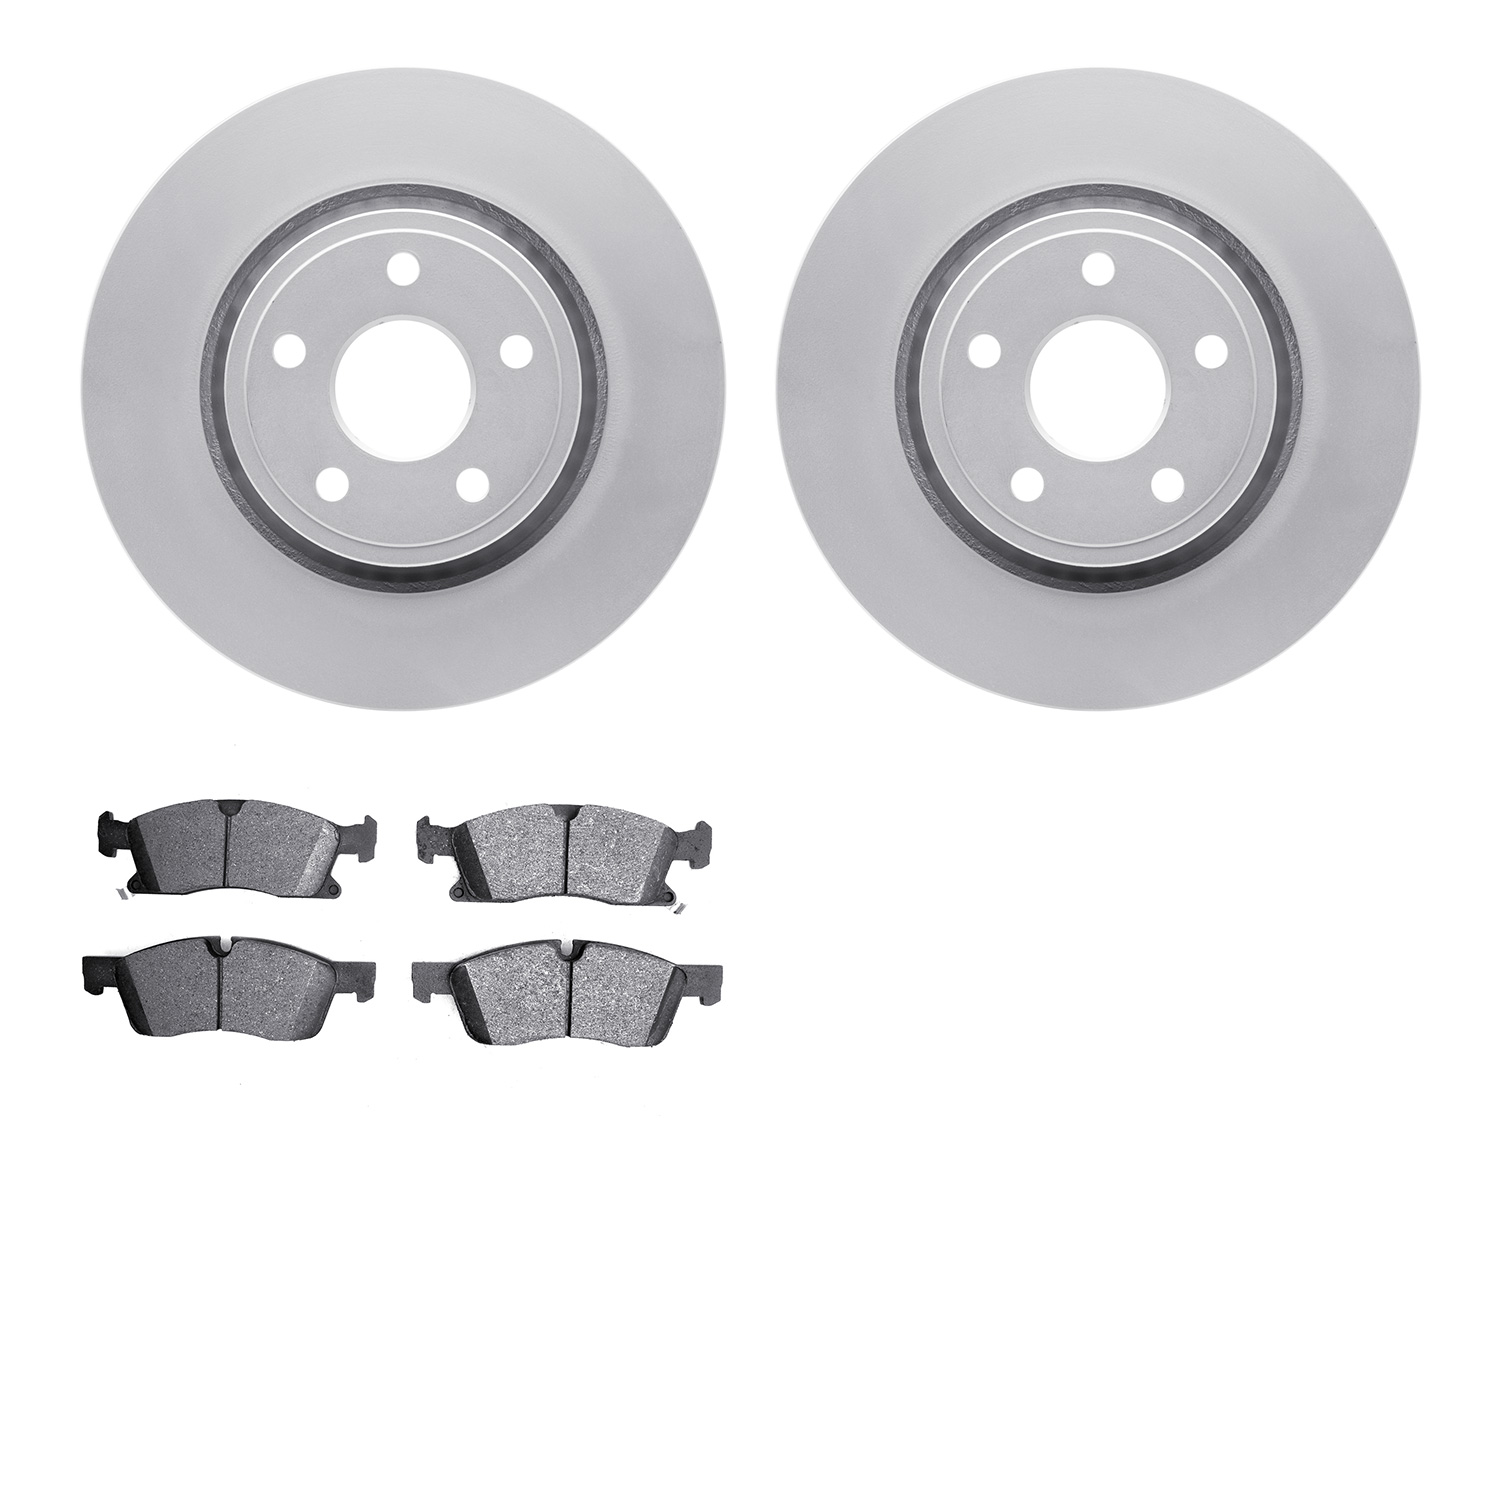 4202-42004 Geospec Brake Rotors w/Heavy-Duty Brake Pads Kit, Fits Select Mopar, Position: Front